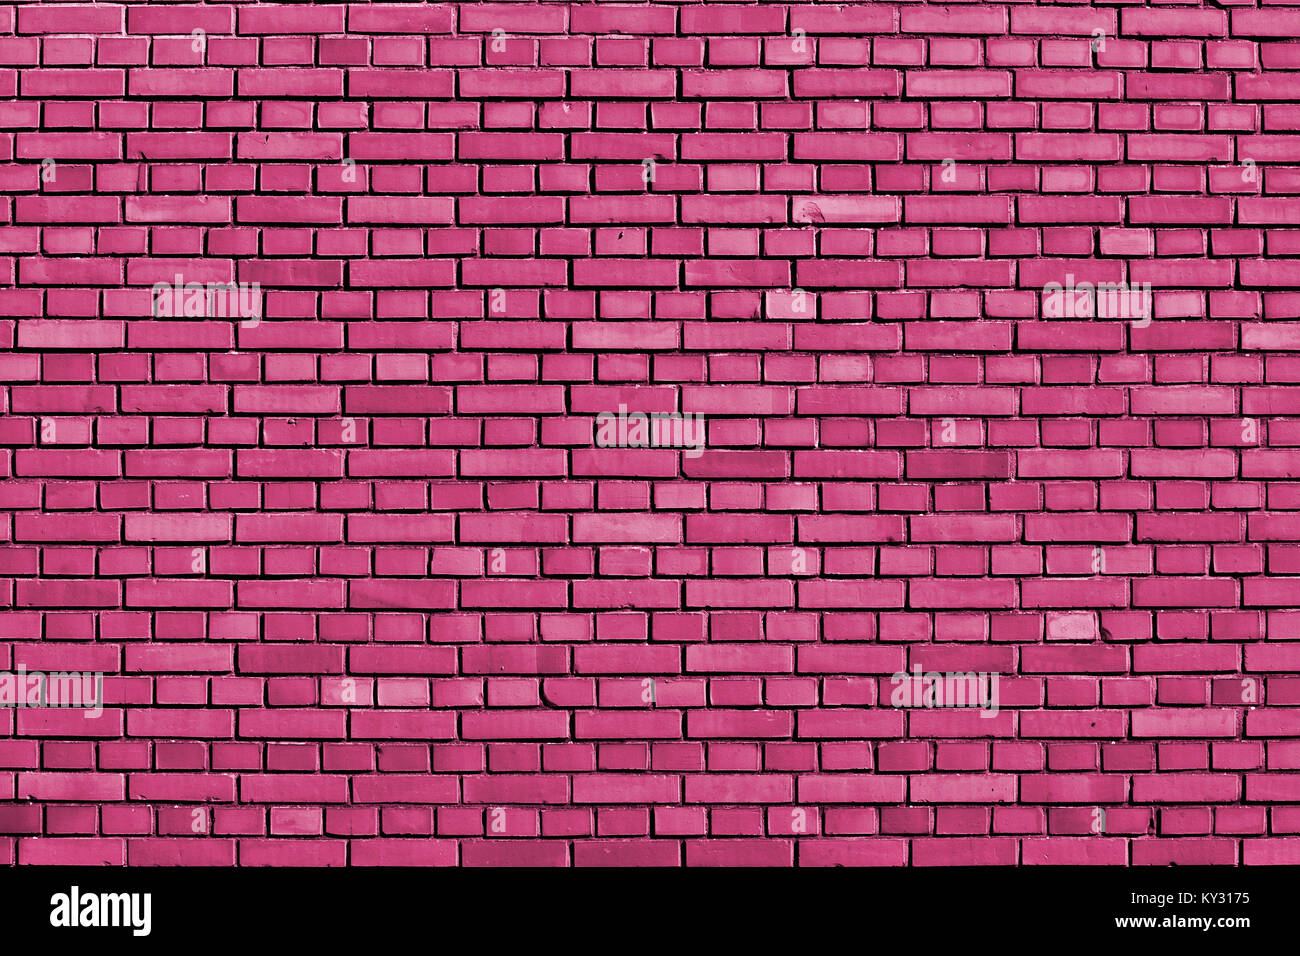 Mur en brique de couleur rose fuchsia background Banque D'Images